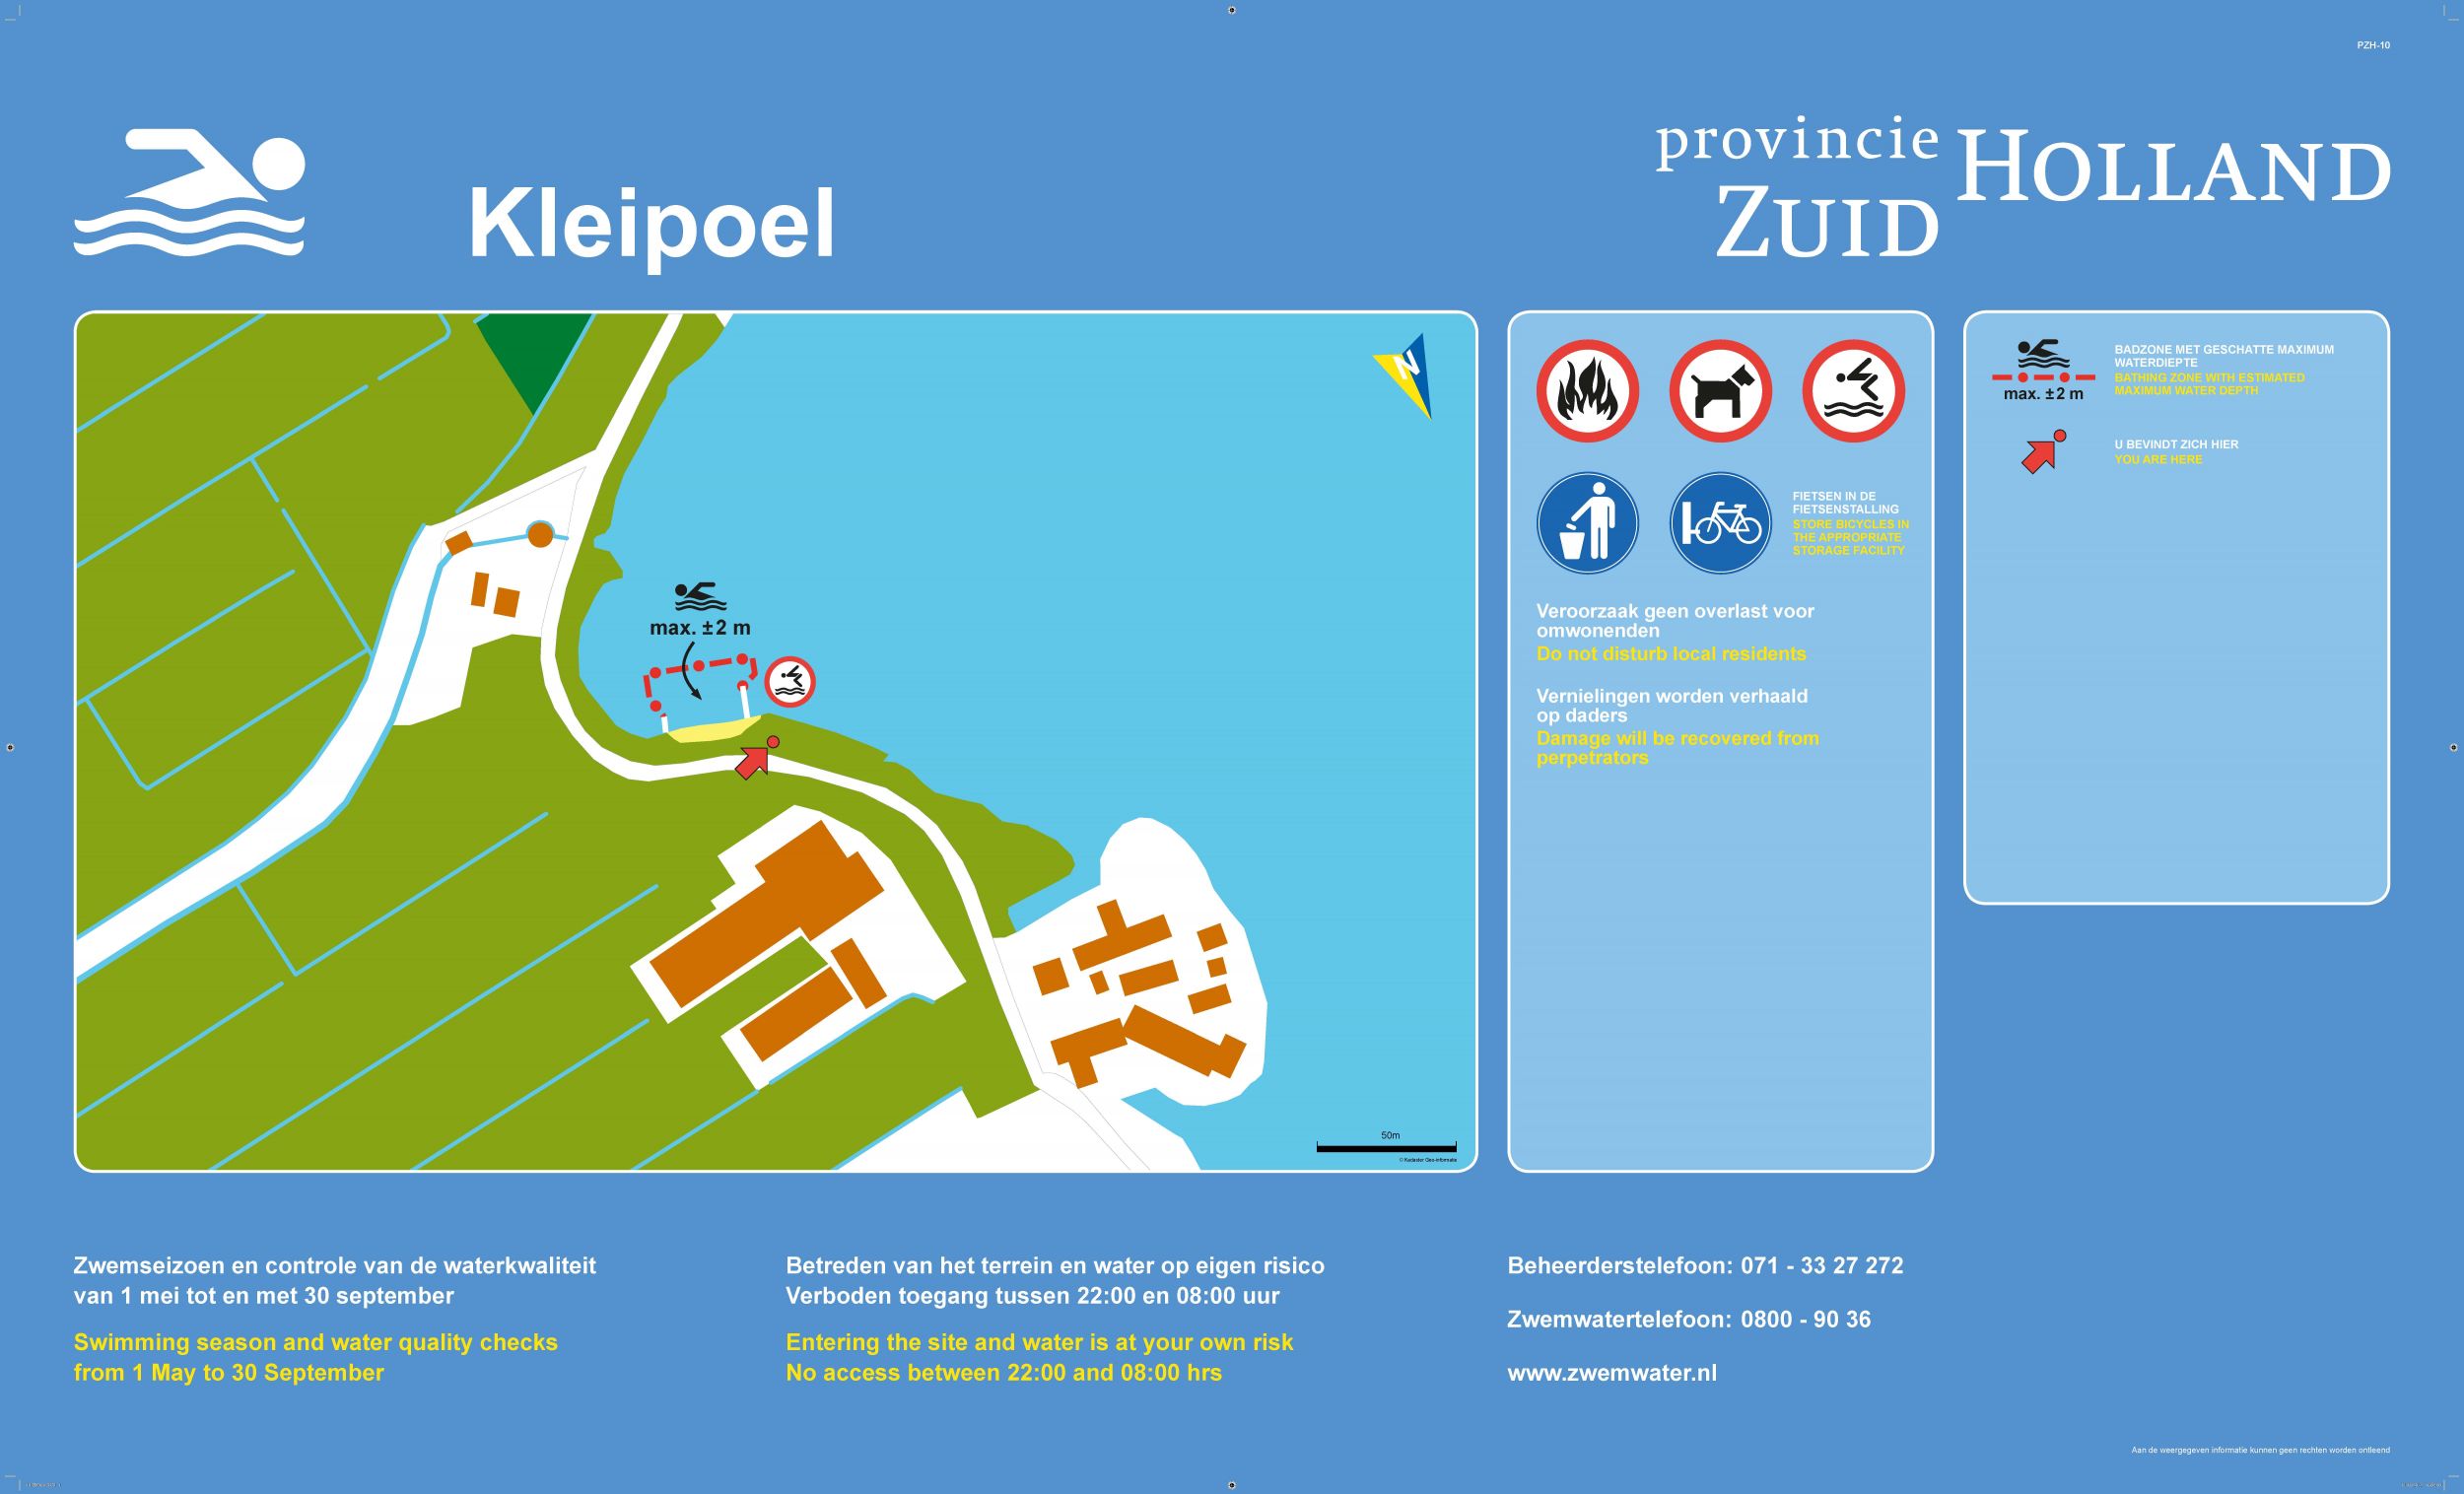 Het informatiebord bij zwemlocatie Kleipoel